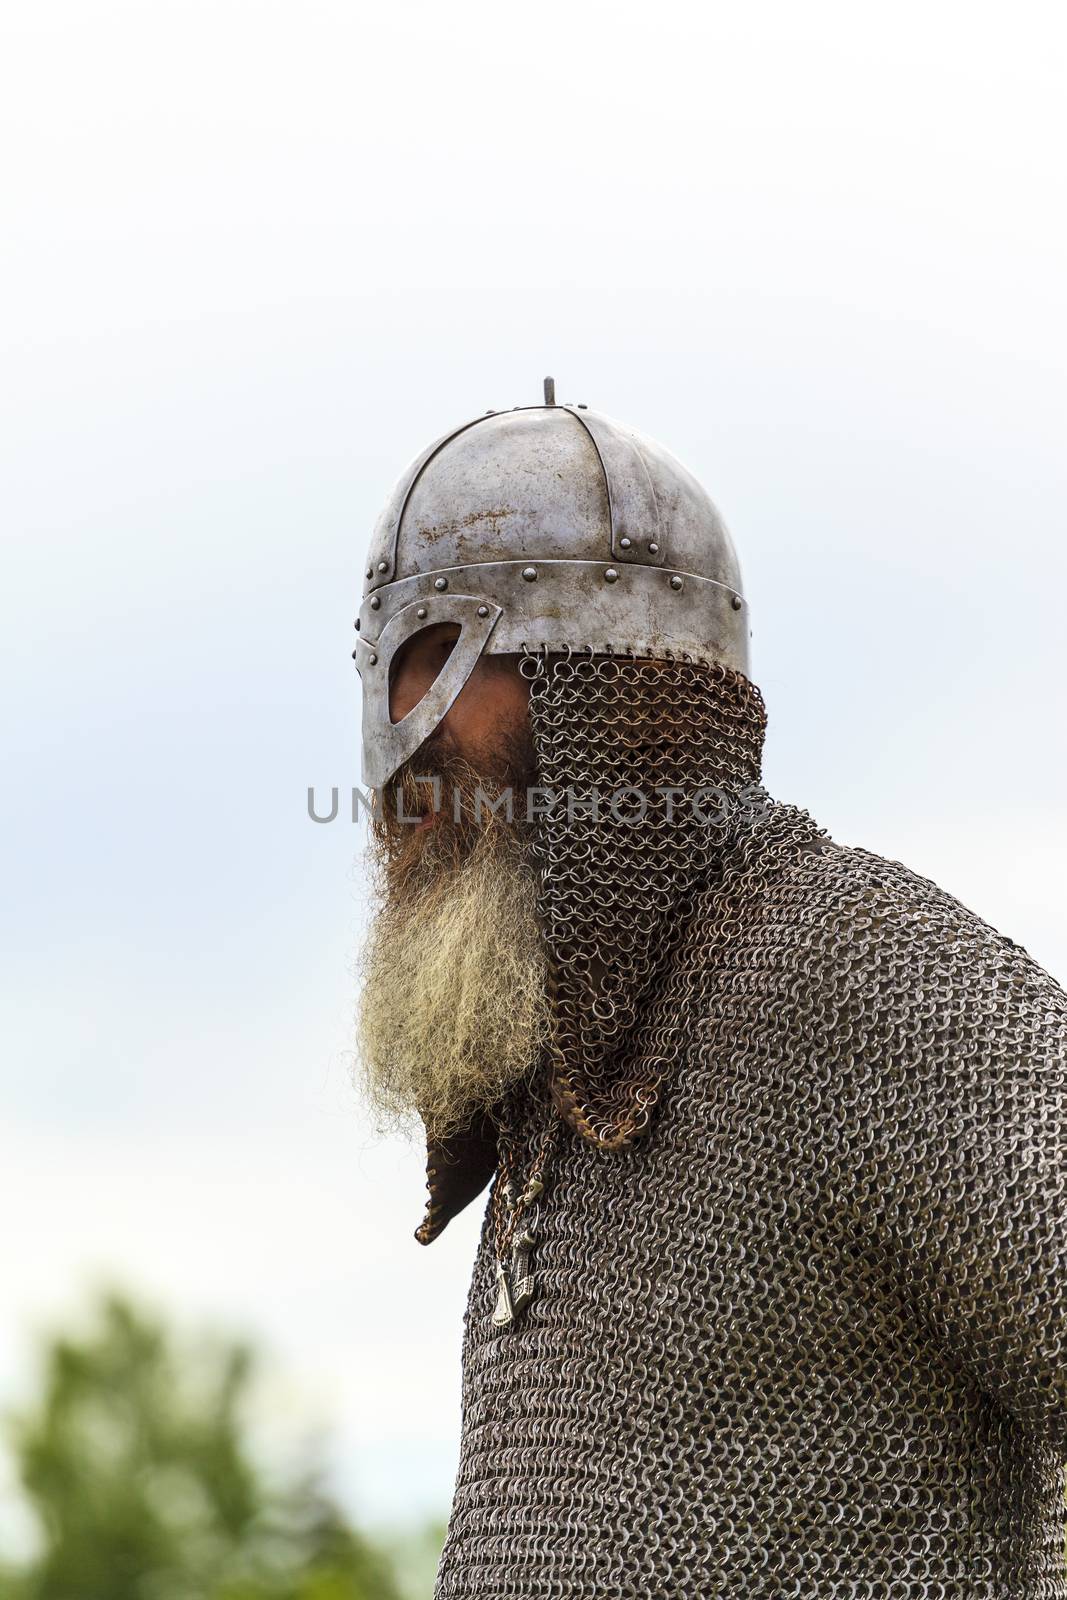 Vikings by Imagecom